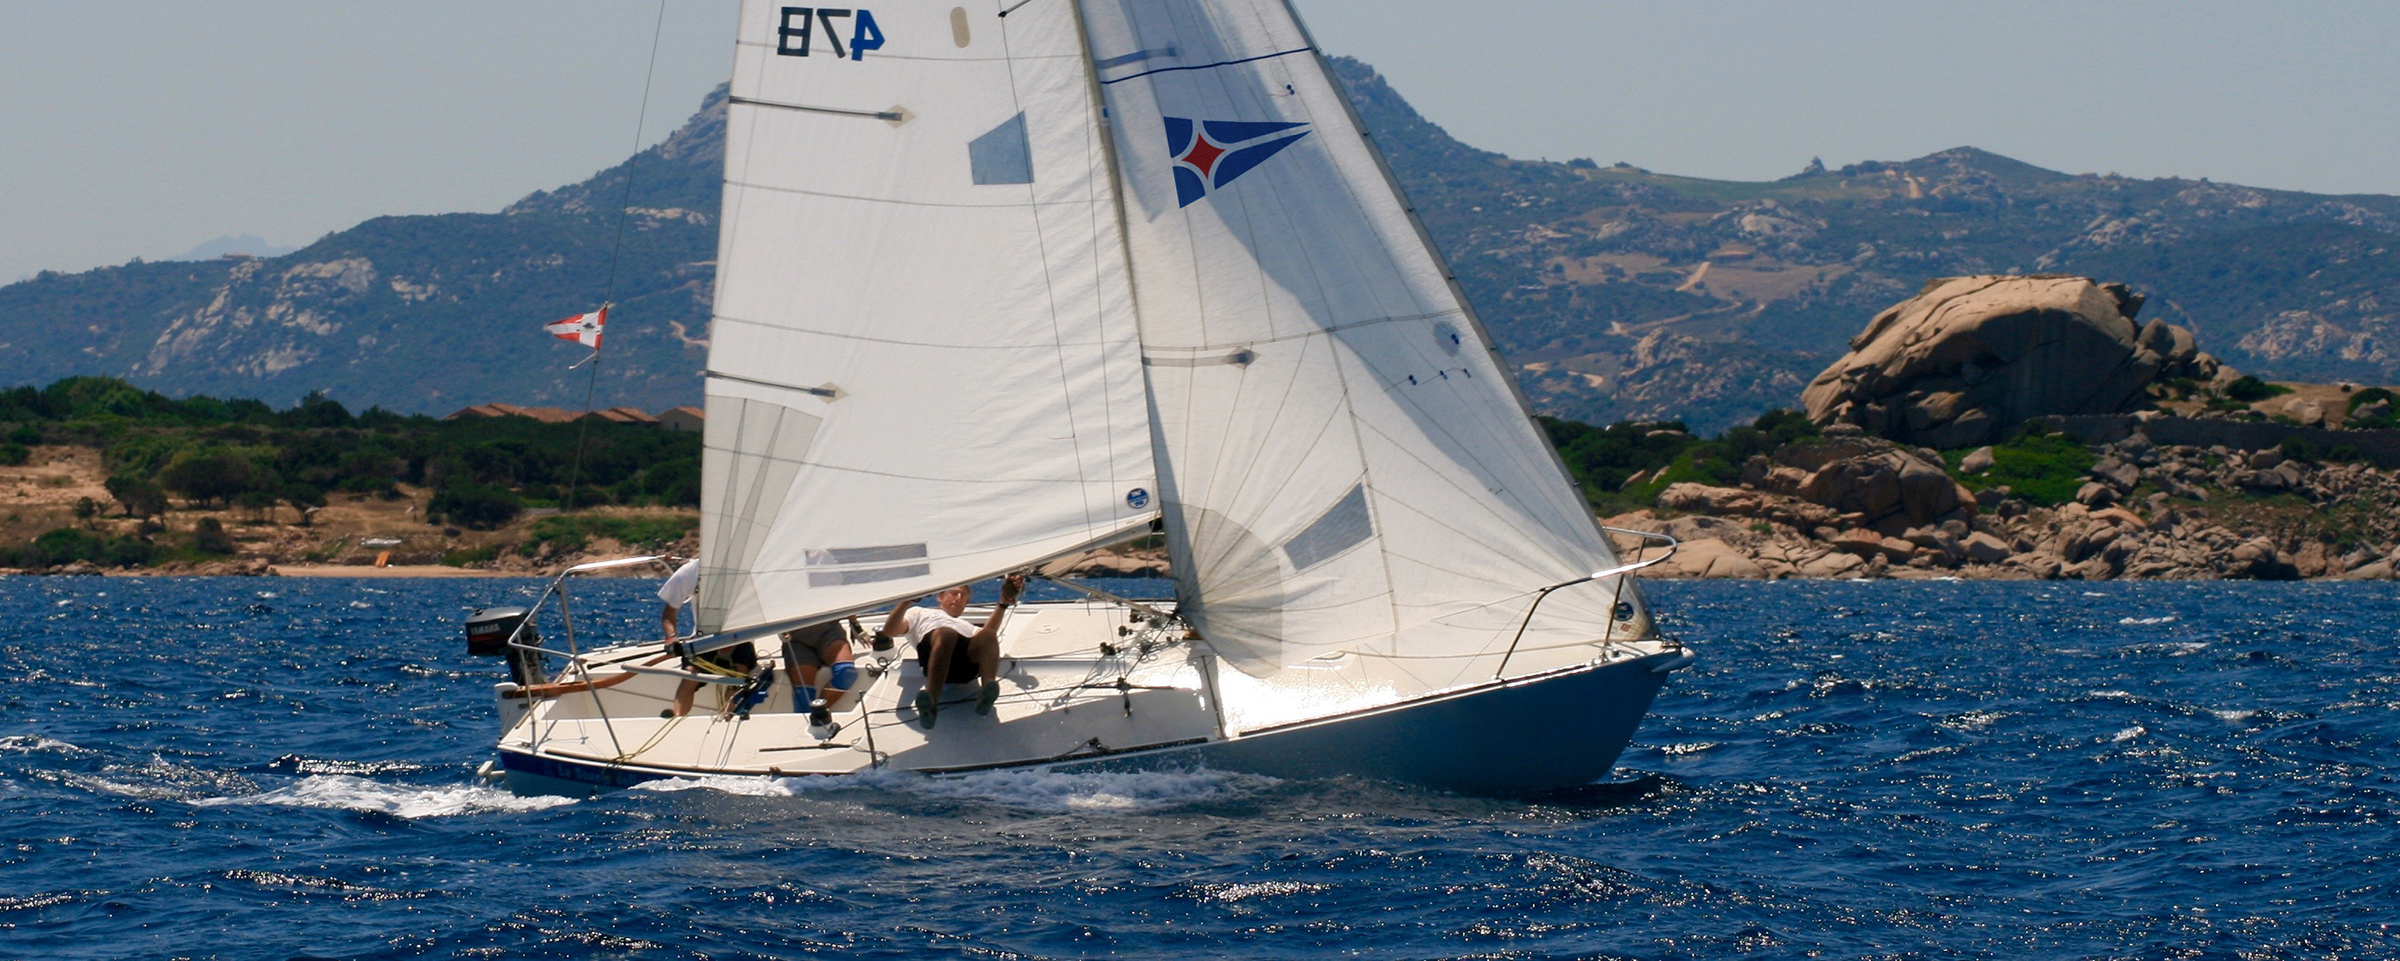 YCCS Sailing School - 4 - Yacht Club Costa Smeralda